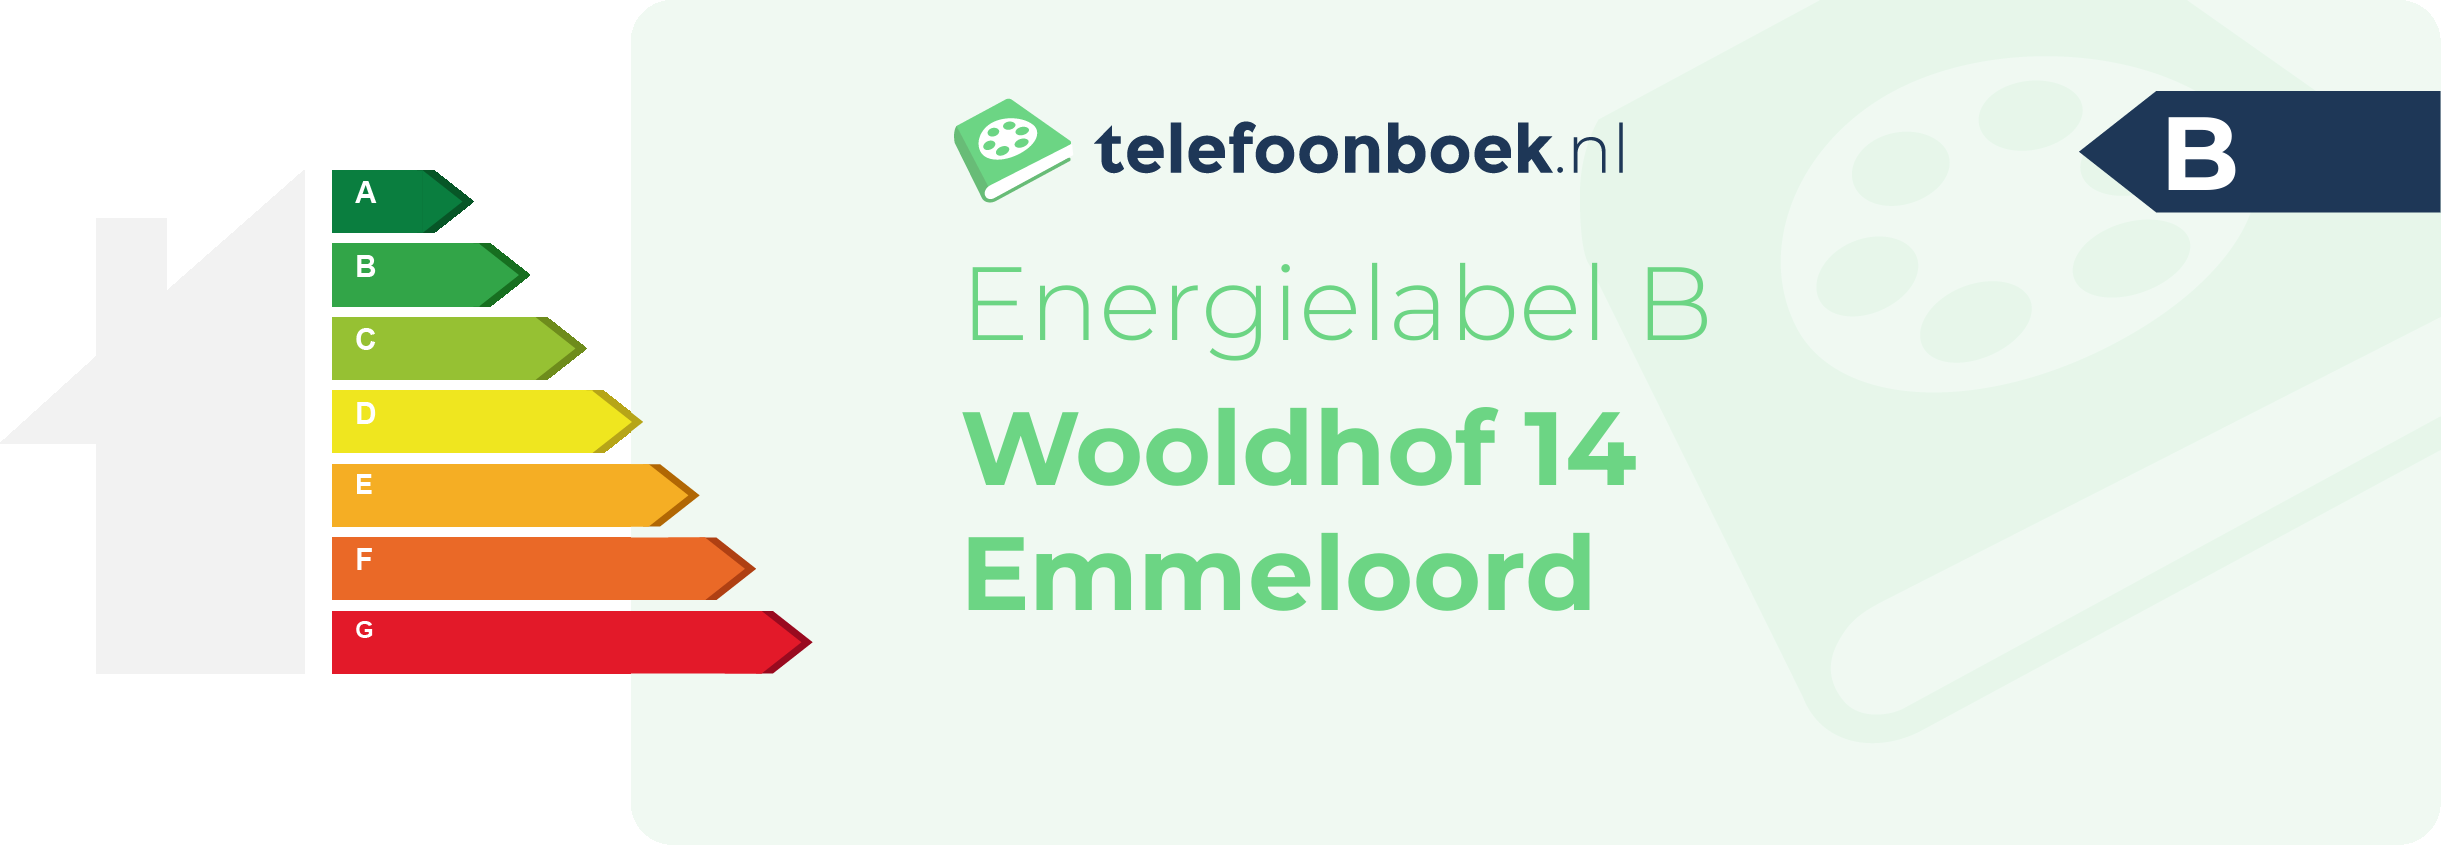 Energielabel Wooldhof 14 Emmeloord